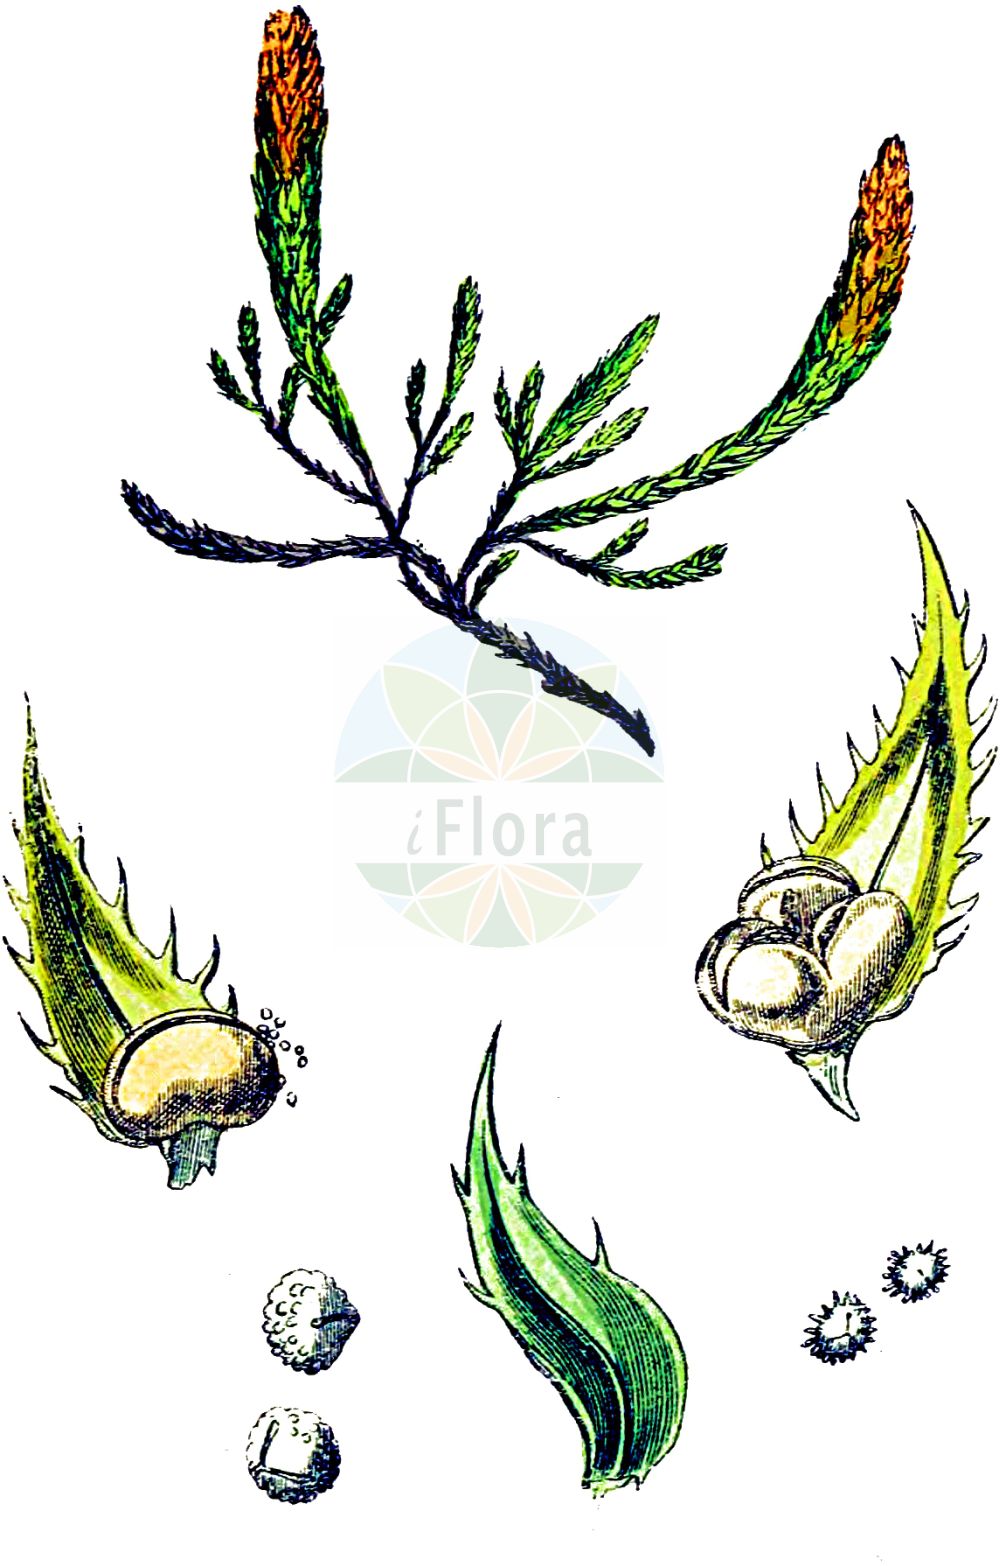 Historische Abbildung von Selaginella selaginoides (Gezähnter Moosfarn - Lesser Clubmoss). Das Bild zeigt Blatt, Bluete, Frucht und Same. ---- Historical Drawing of Selaginella selaginoides (Gezähnter Moosfarn - Lesser Clubmoss). The image is showing leaf, flower, fruit and seed.(Selaginella selaginoides,Gezähnter Moosfarn,Lesser Clubmoss,Lycopodium selaginoides,Selaginella selaginoides,Selaginella spinosa,Selaginella spinulosa,Gezaehnter Moosfarn,Lesser Clubmoss,Selaginella,Moosfarn,Spikemoss,Selaginellaceae,Moosfarngewächse,Spikmoss family,Blatt,Bluete,Frucht,Same,leaf,flower,fruit,seed,Sowerby (1790-1813))